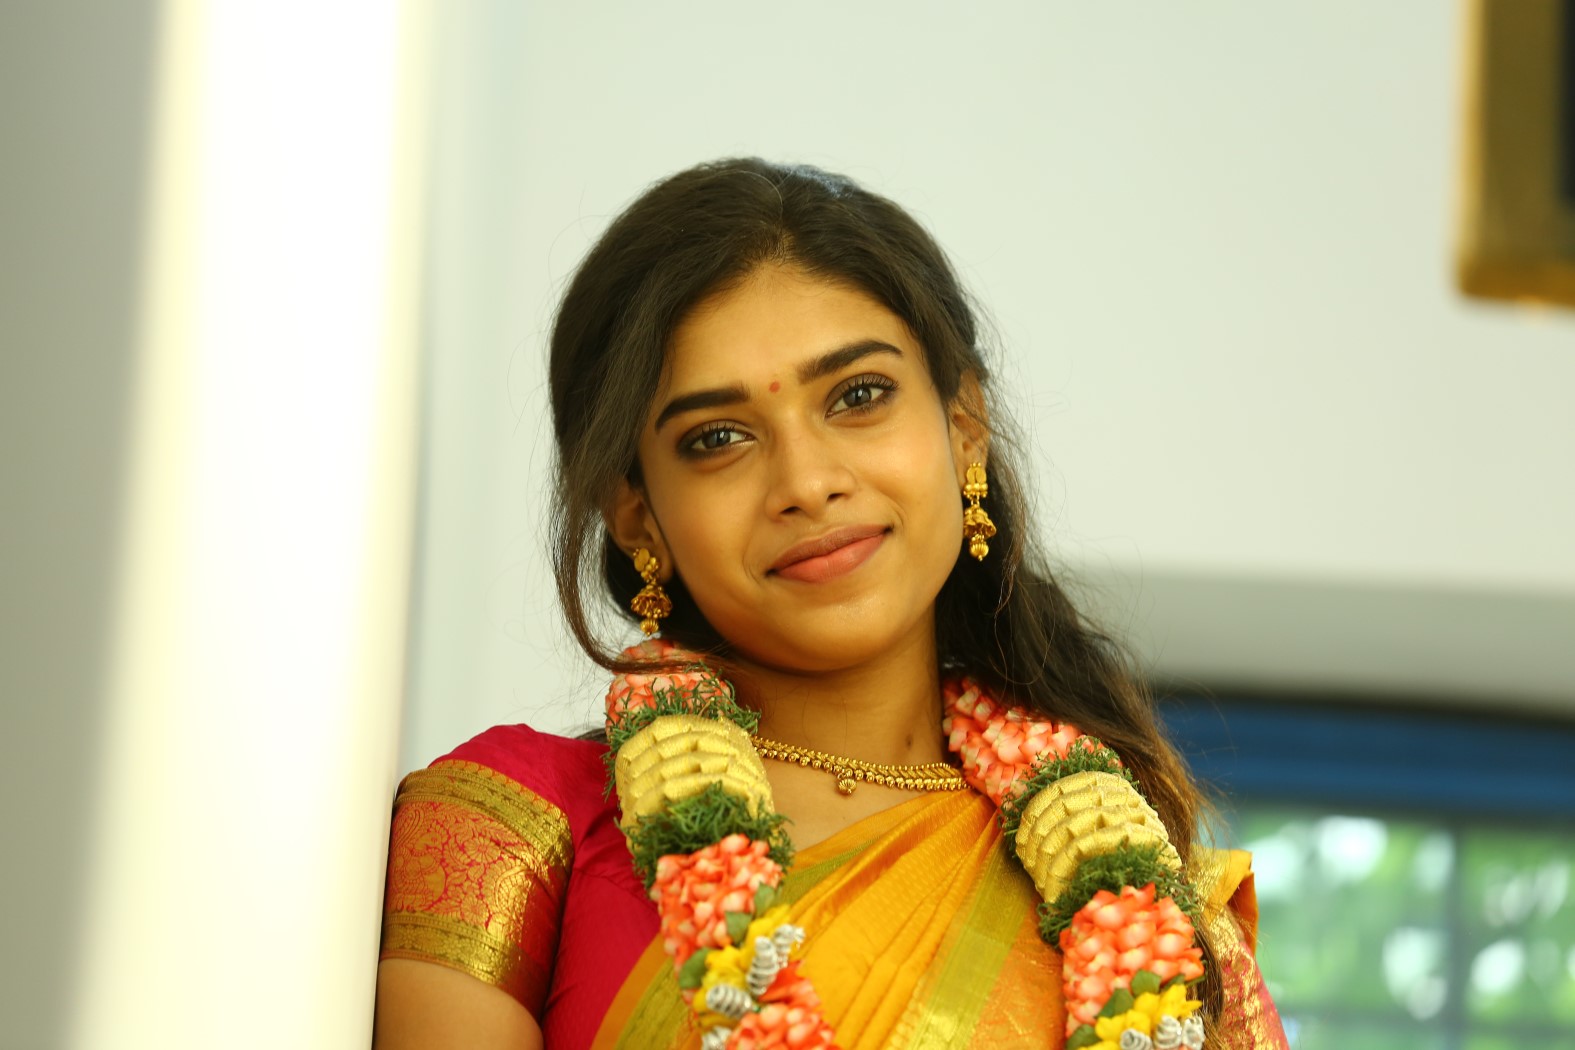 Actress Dushara